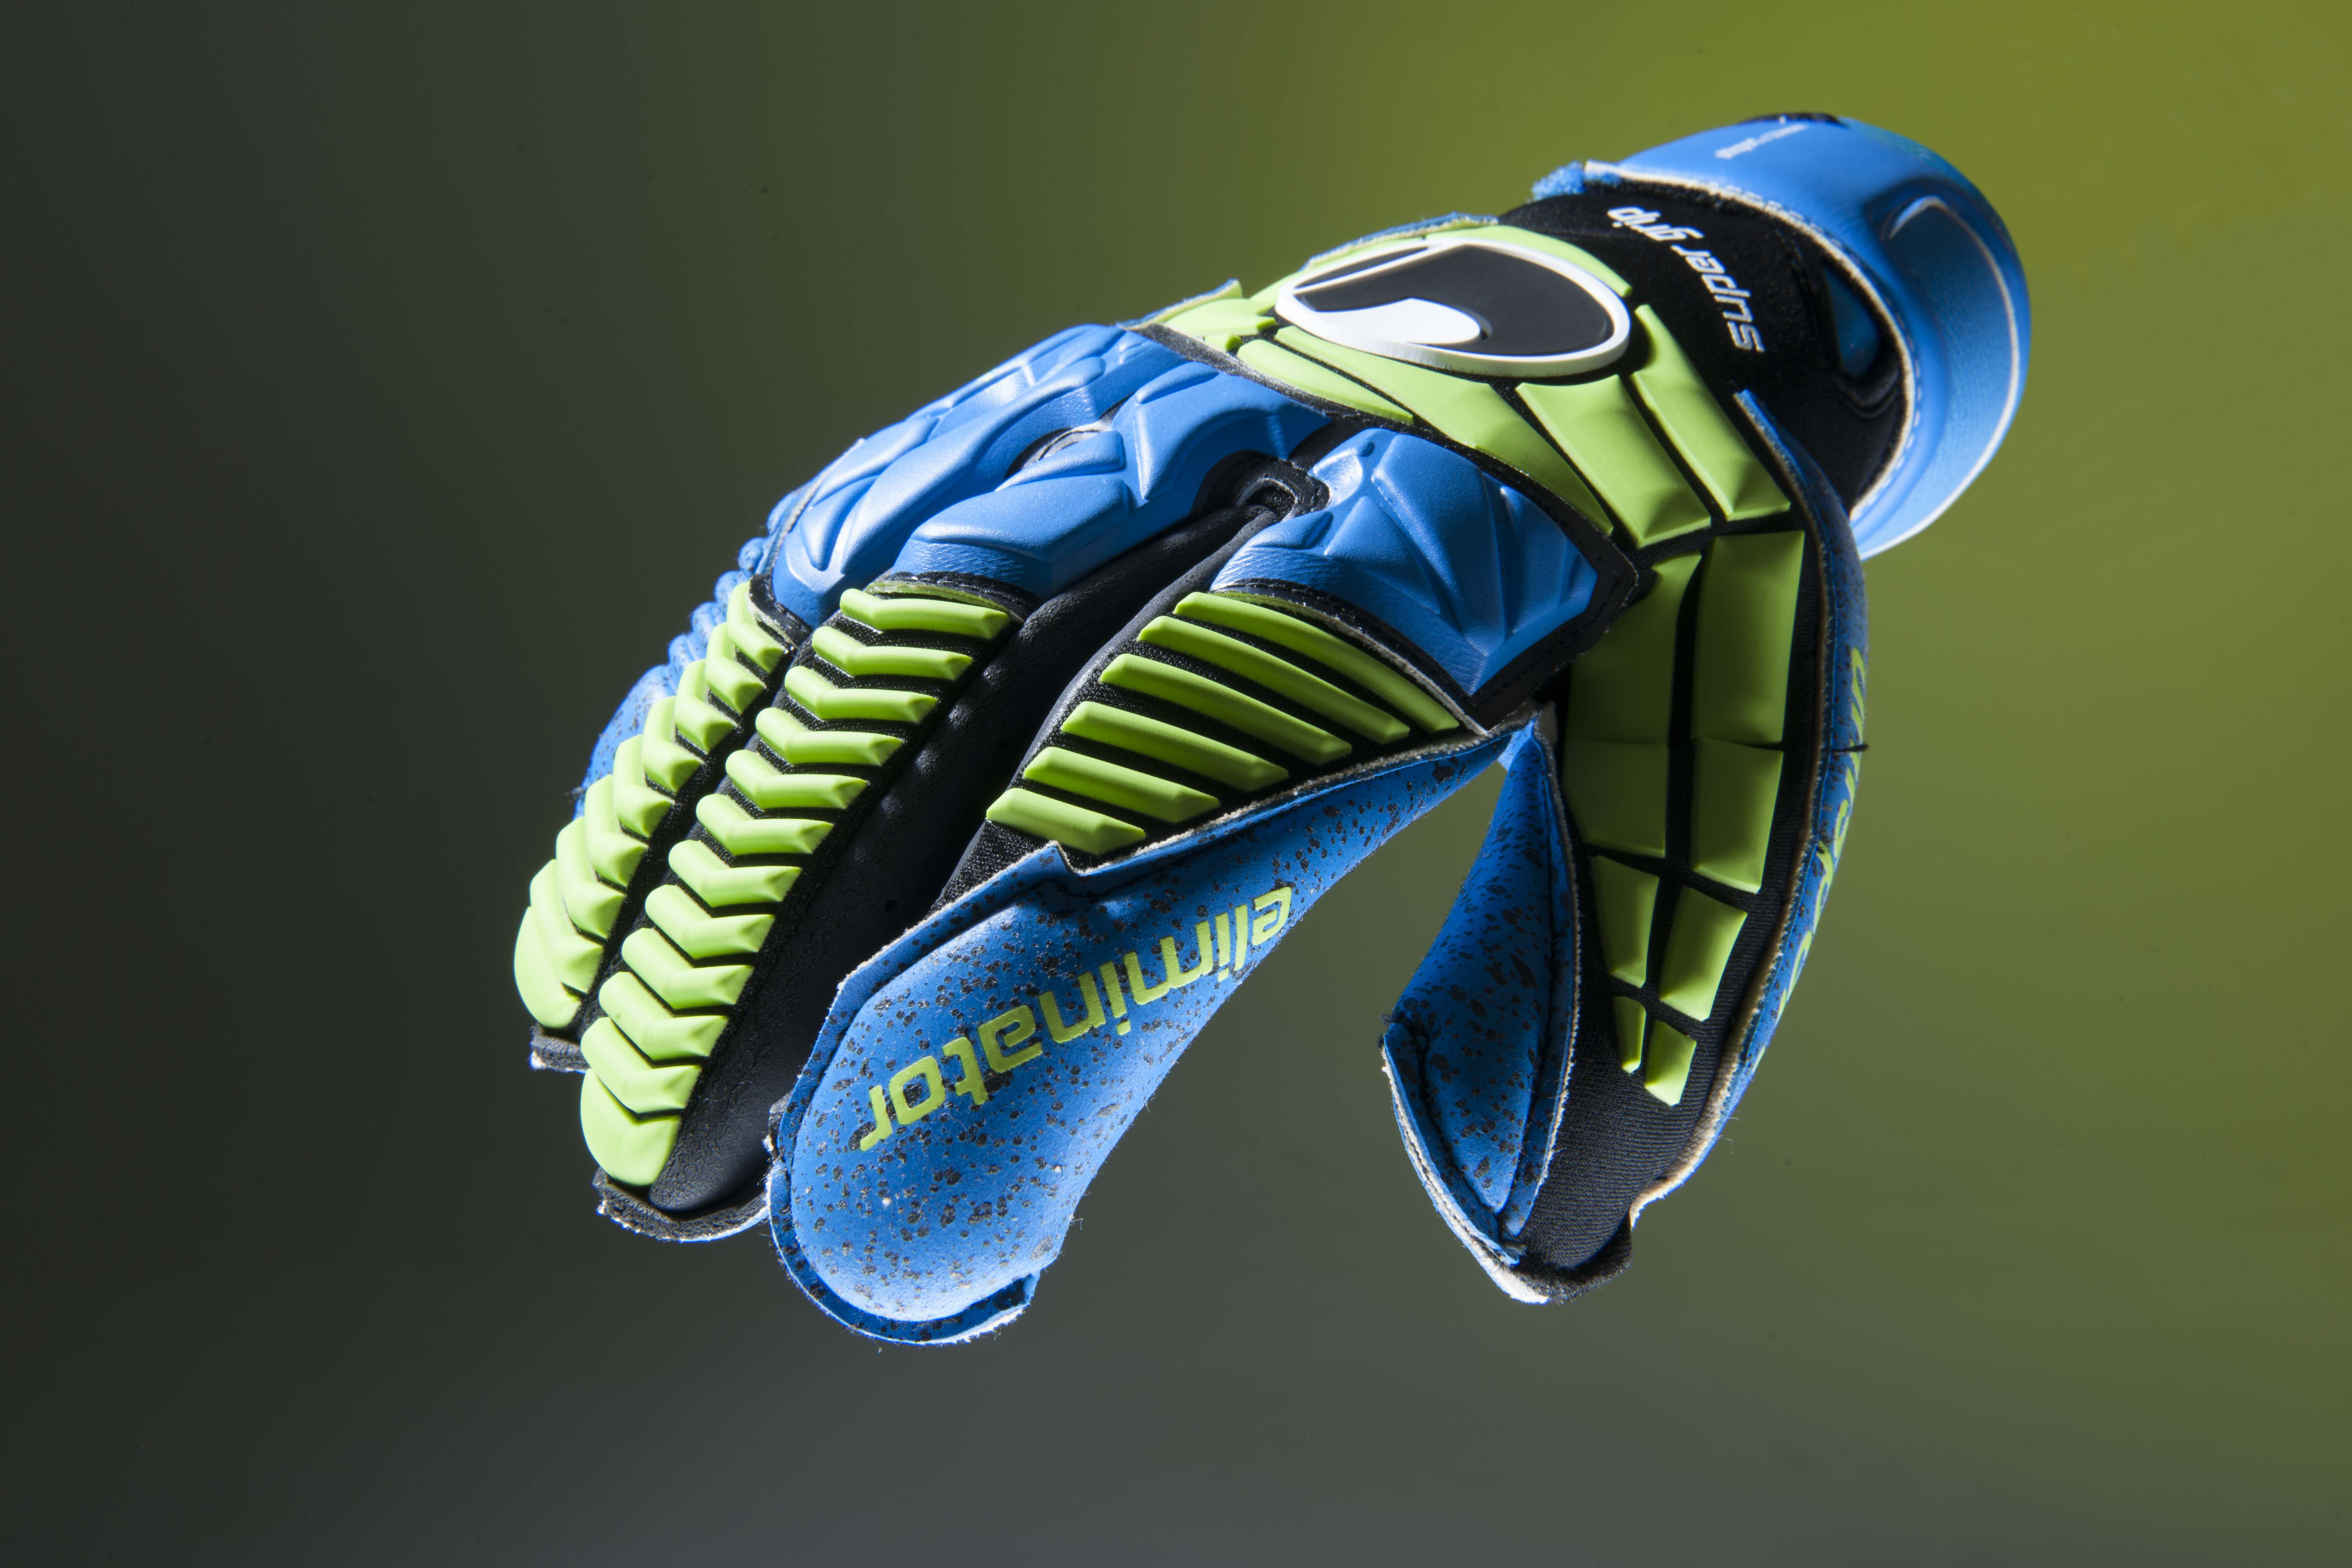 Nouveau gants de gardien de but - Uhlsport Eliminator Energy Power ON